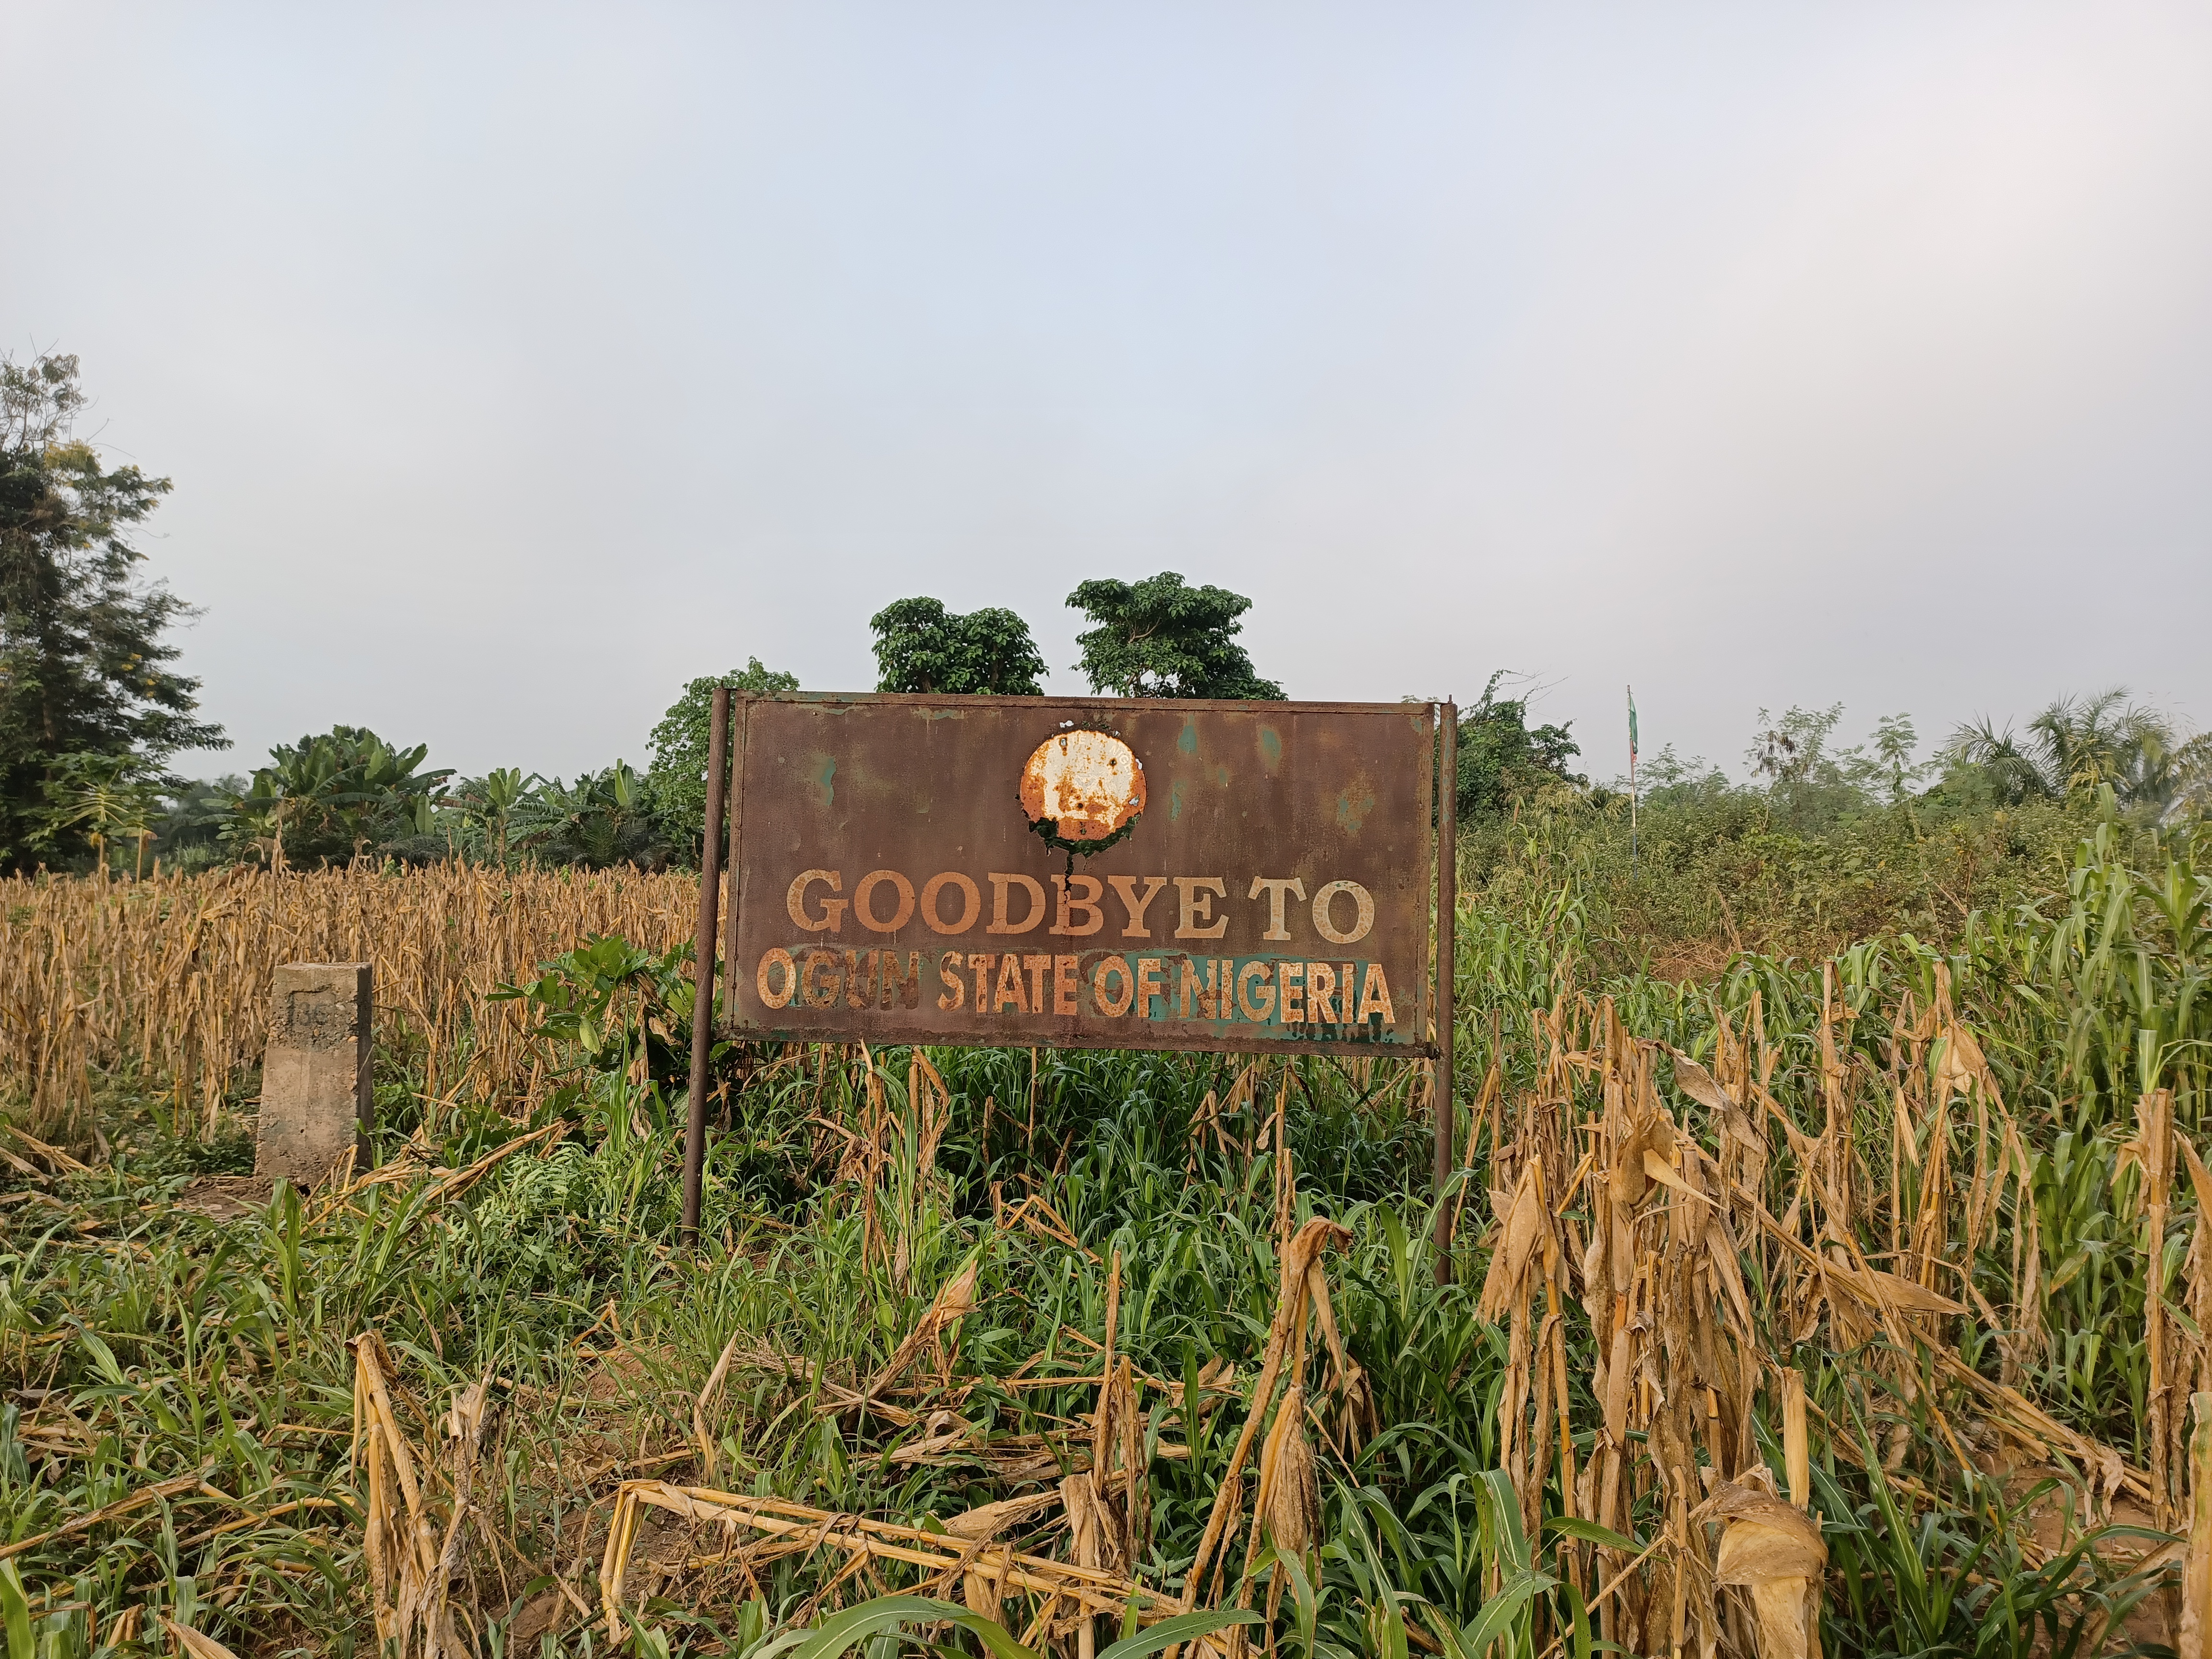 NIGERIA - REPUBLIC OF BENIN BORDER DEMARCATION AT MADOGA.